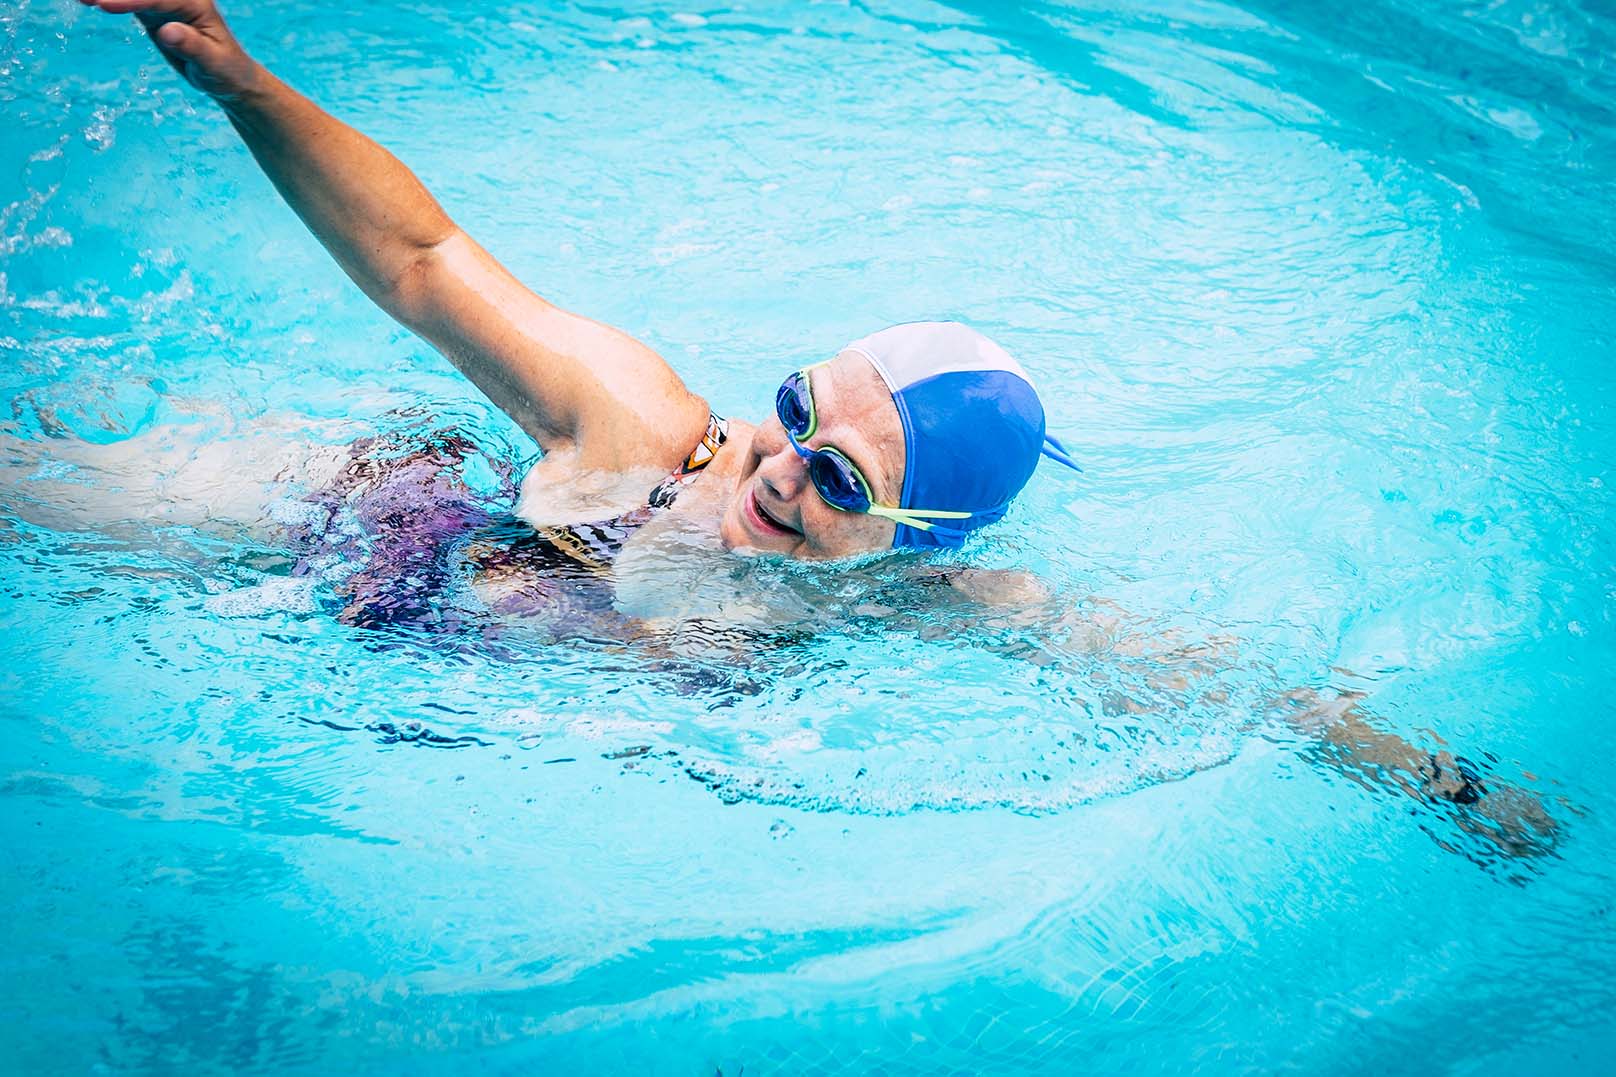 Femme agée nageant dans une piscine - Elderly woman swimming in a pool